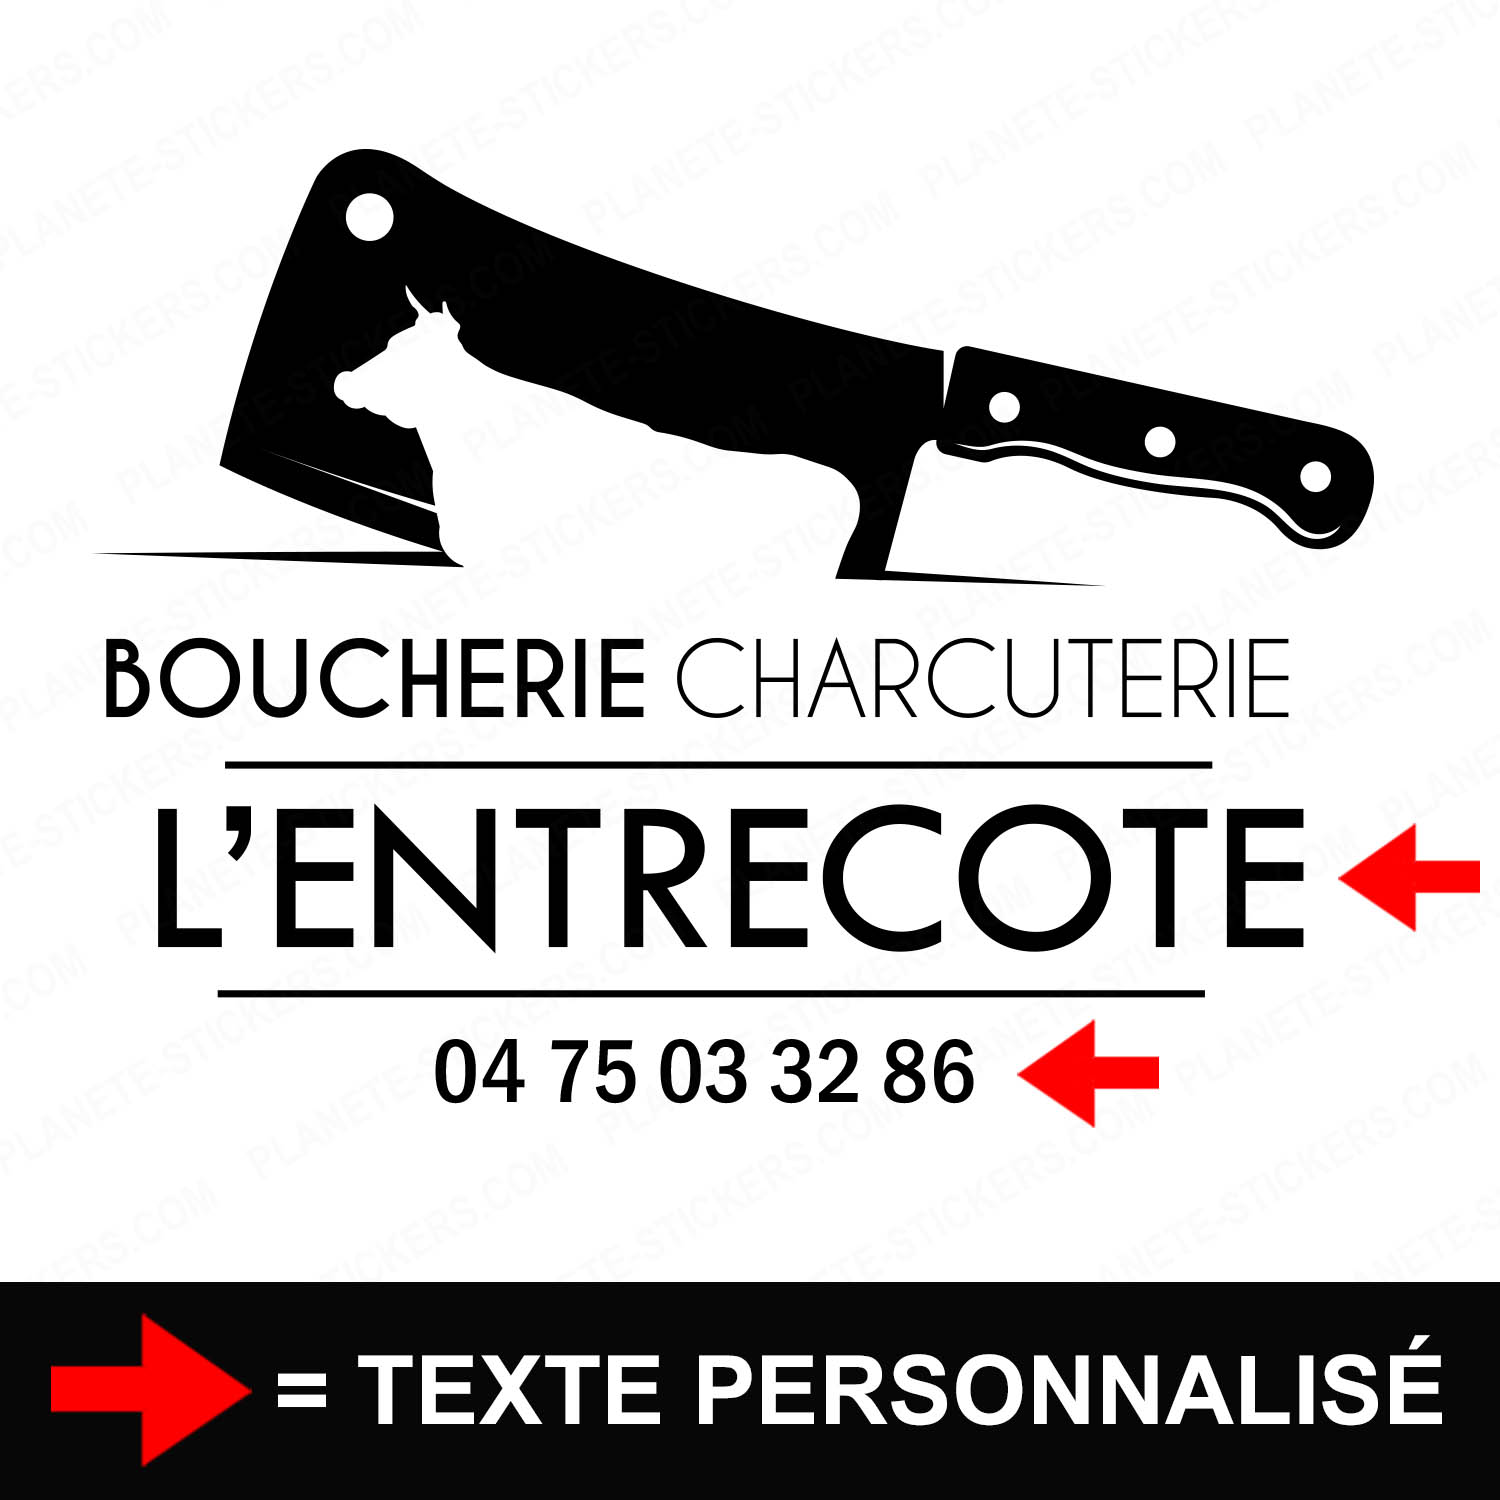 ref6boucherievitrine-stickers-boucherie-charcuterie-vitrine-sticker-personnalisé-autocollant-boutique-pro-boucher-charcutier-professionnel-2